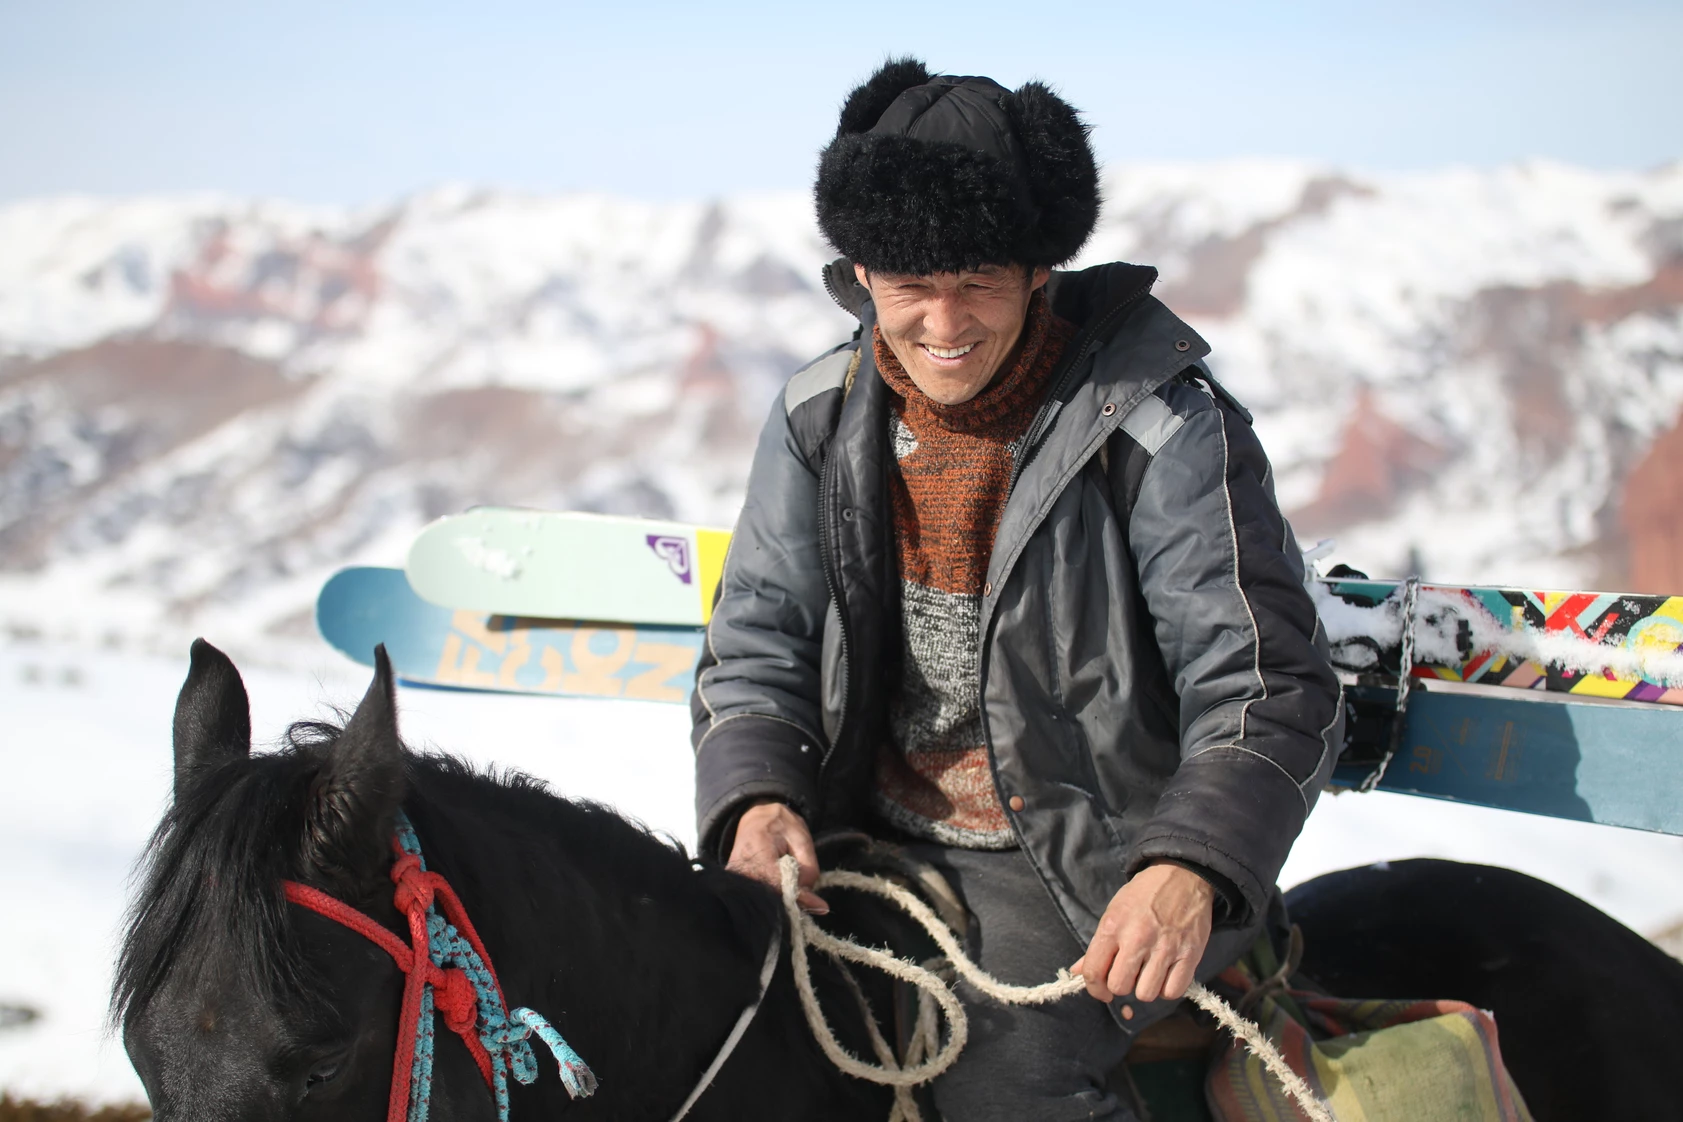 Kyrgyztan Horse Ski Tour Guide riding on a horse